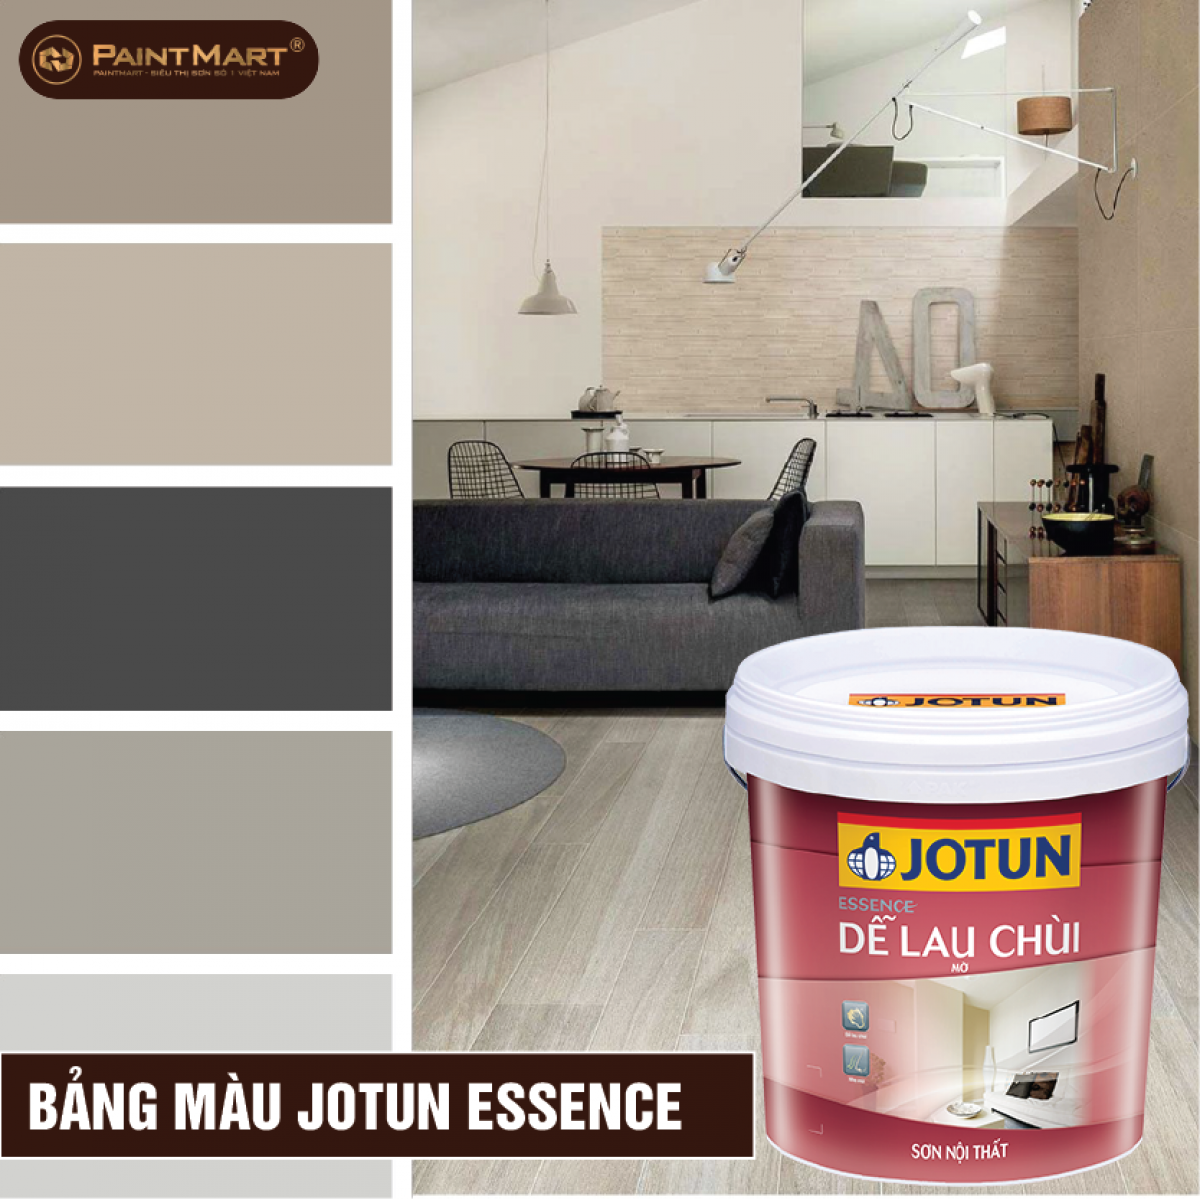 Sơn dầu ESSENCE - Với sơn dầu ESSENCE, bạn sẽ ngạc nhiên vì chất lượng tuyệt vời của sơn, độ bóng cao và độ bền cao. Hãy xem hình ảnh liên quan để hiểu tại sao sơn ESSENCE là lựa chọn tuyệt vời cho công việc sơn nhà của bạn.